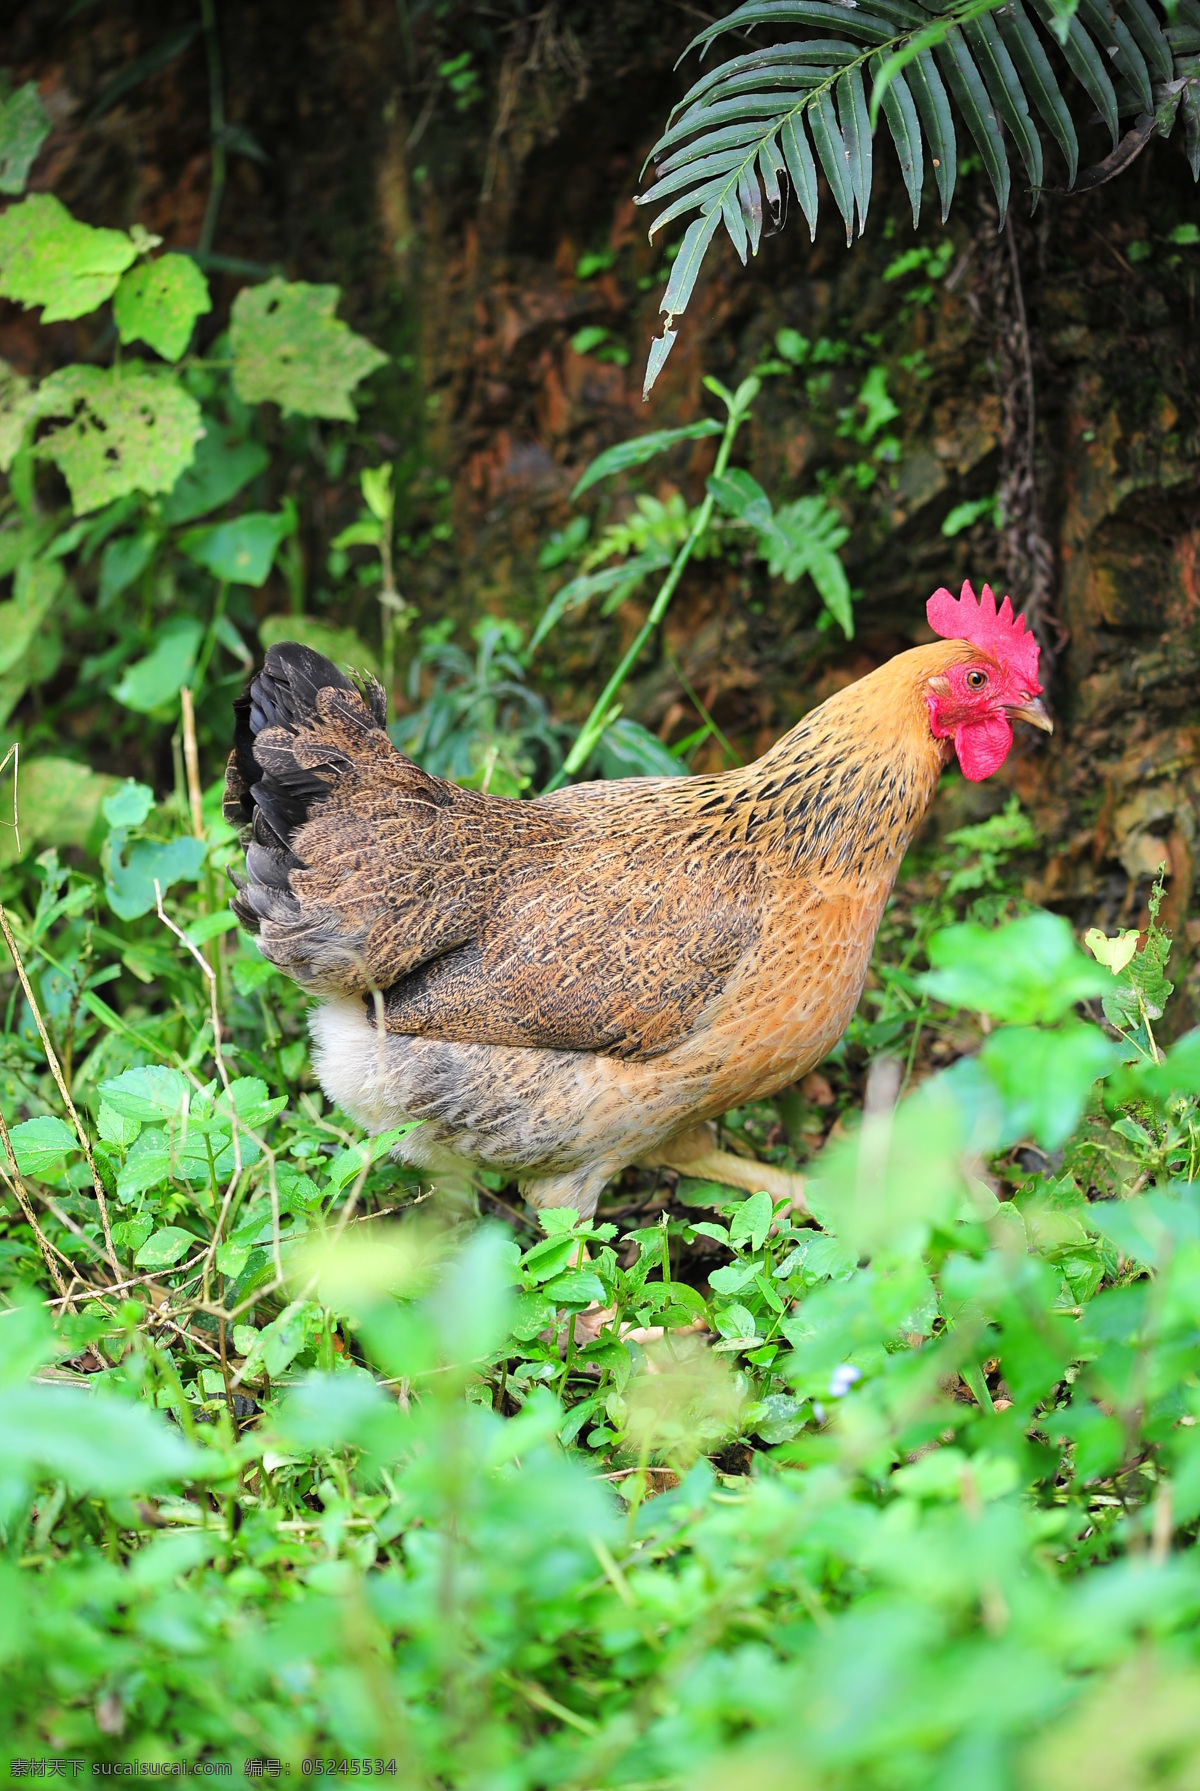 土鸡 鸡 野外 风景 草地 超清晰 放养 花鸡 小母鸡 家禽家畜 生物世界